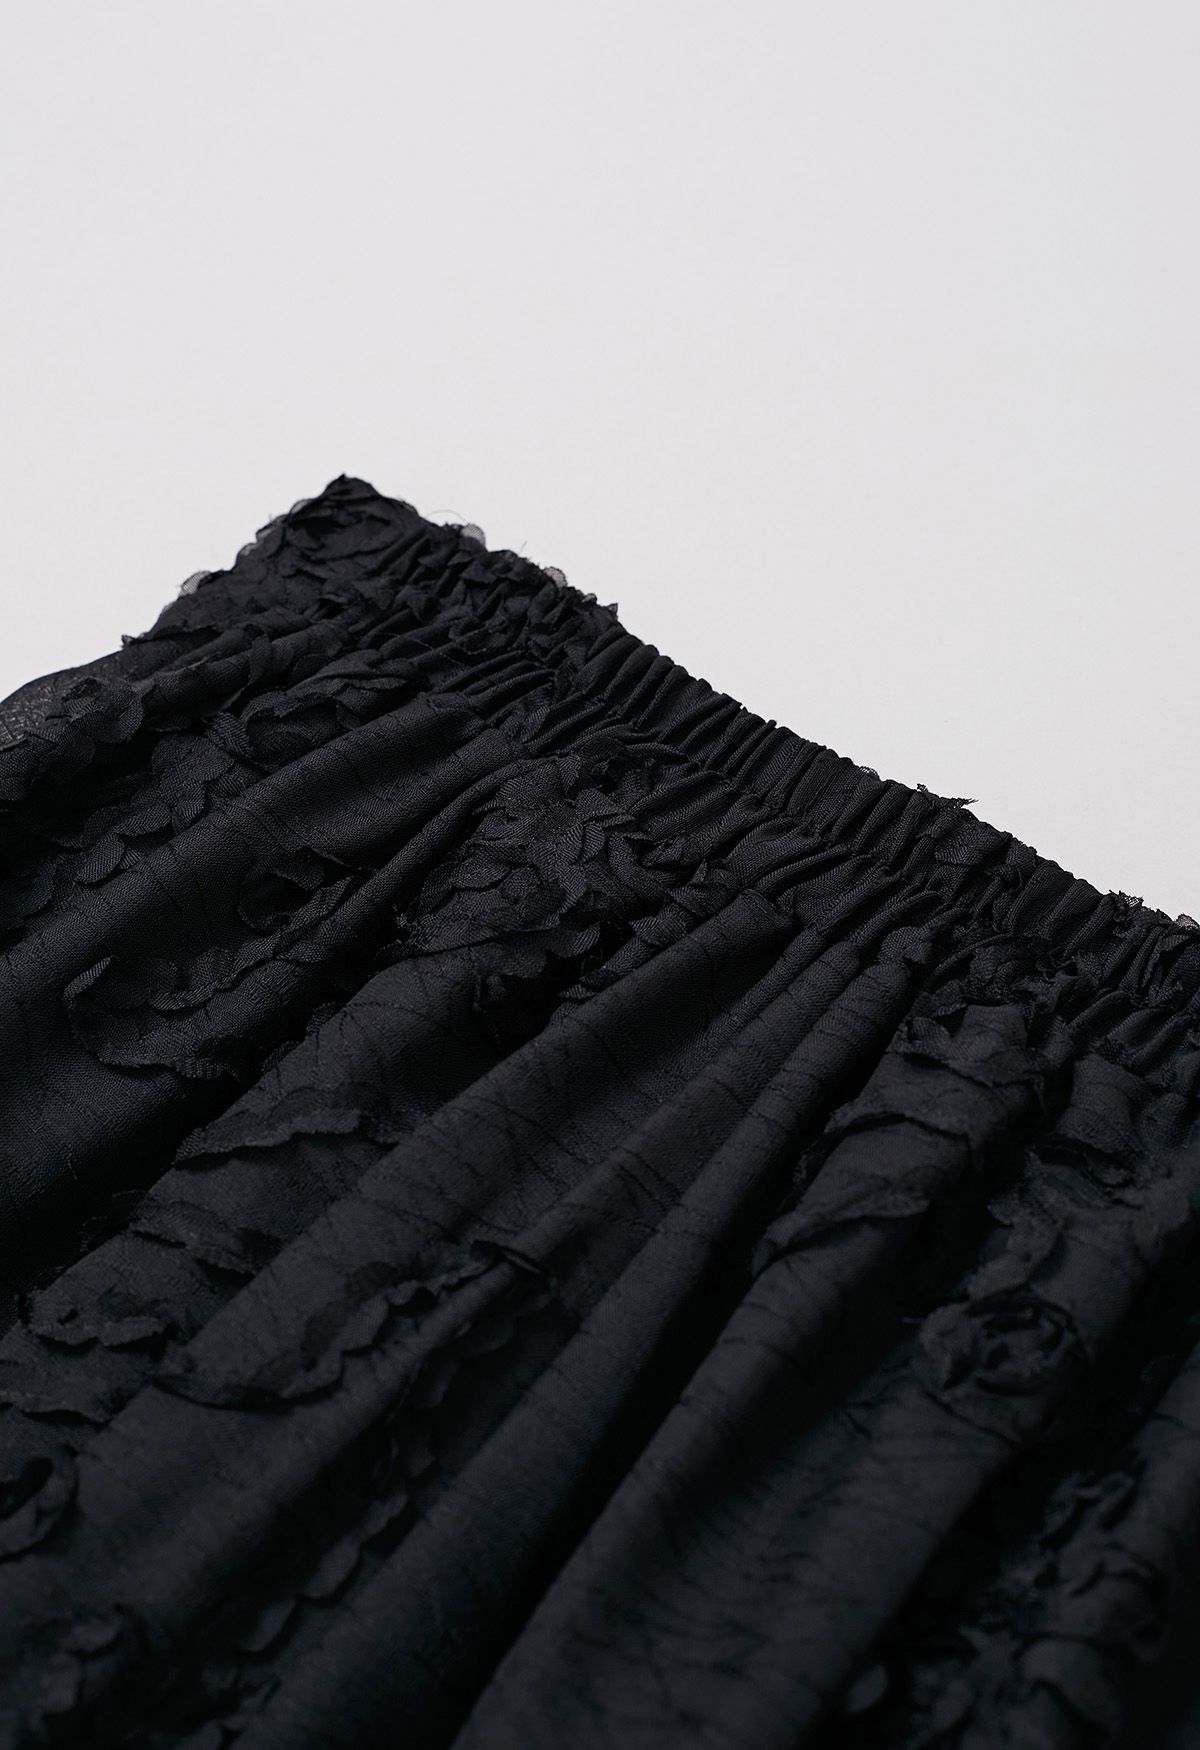 Falda midi plisada de jacquard floral y tallo en negro